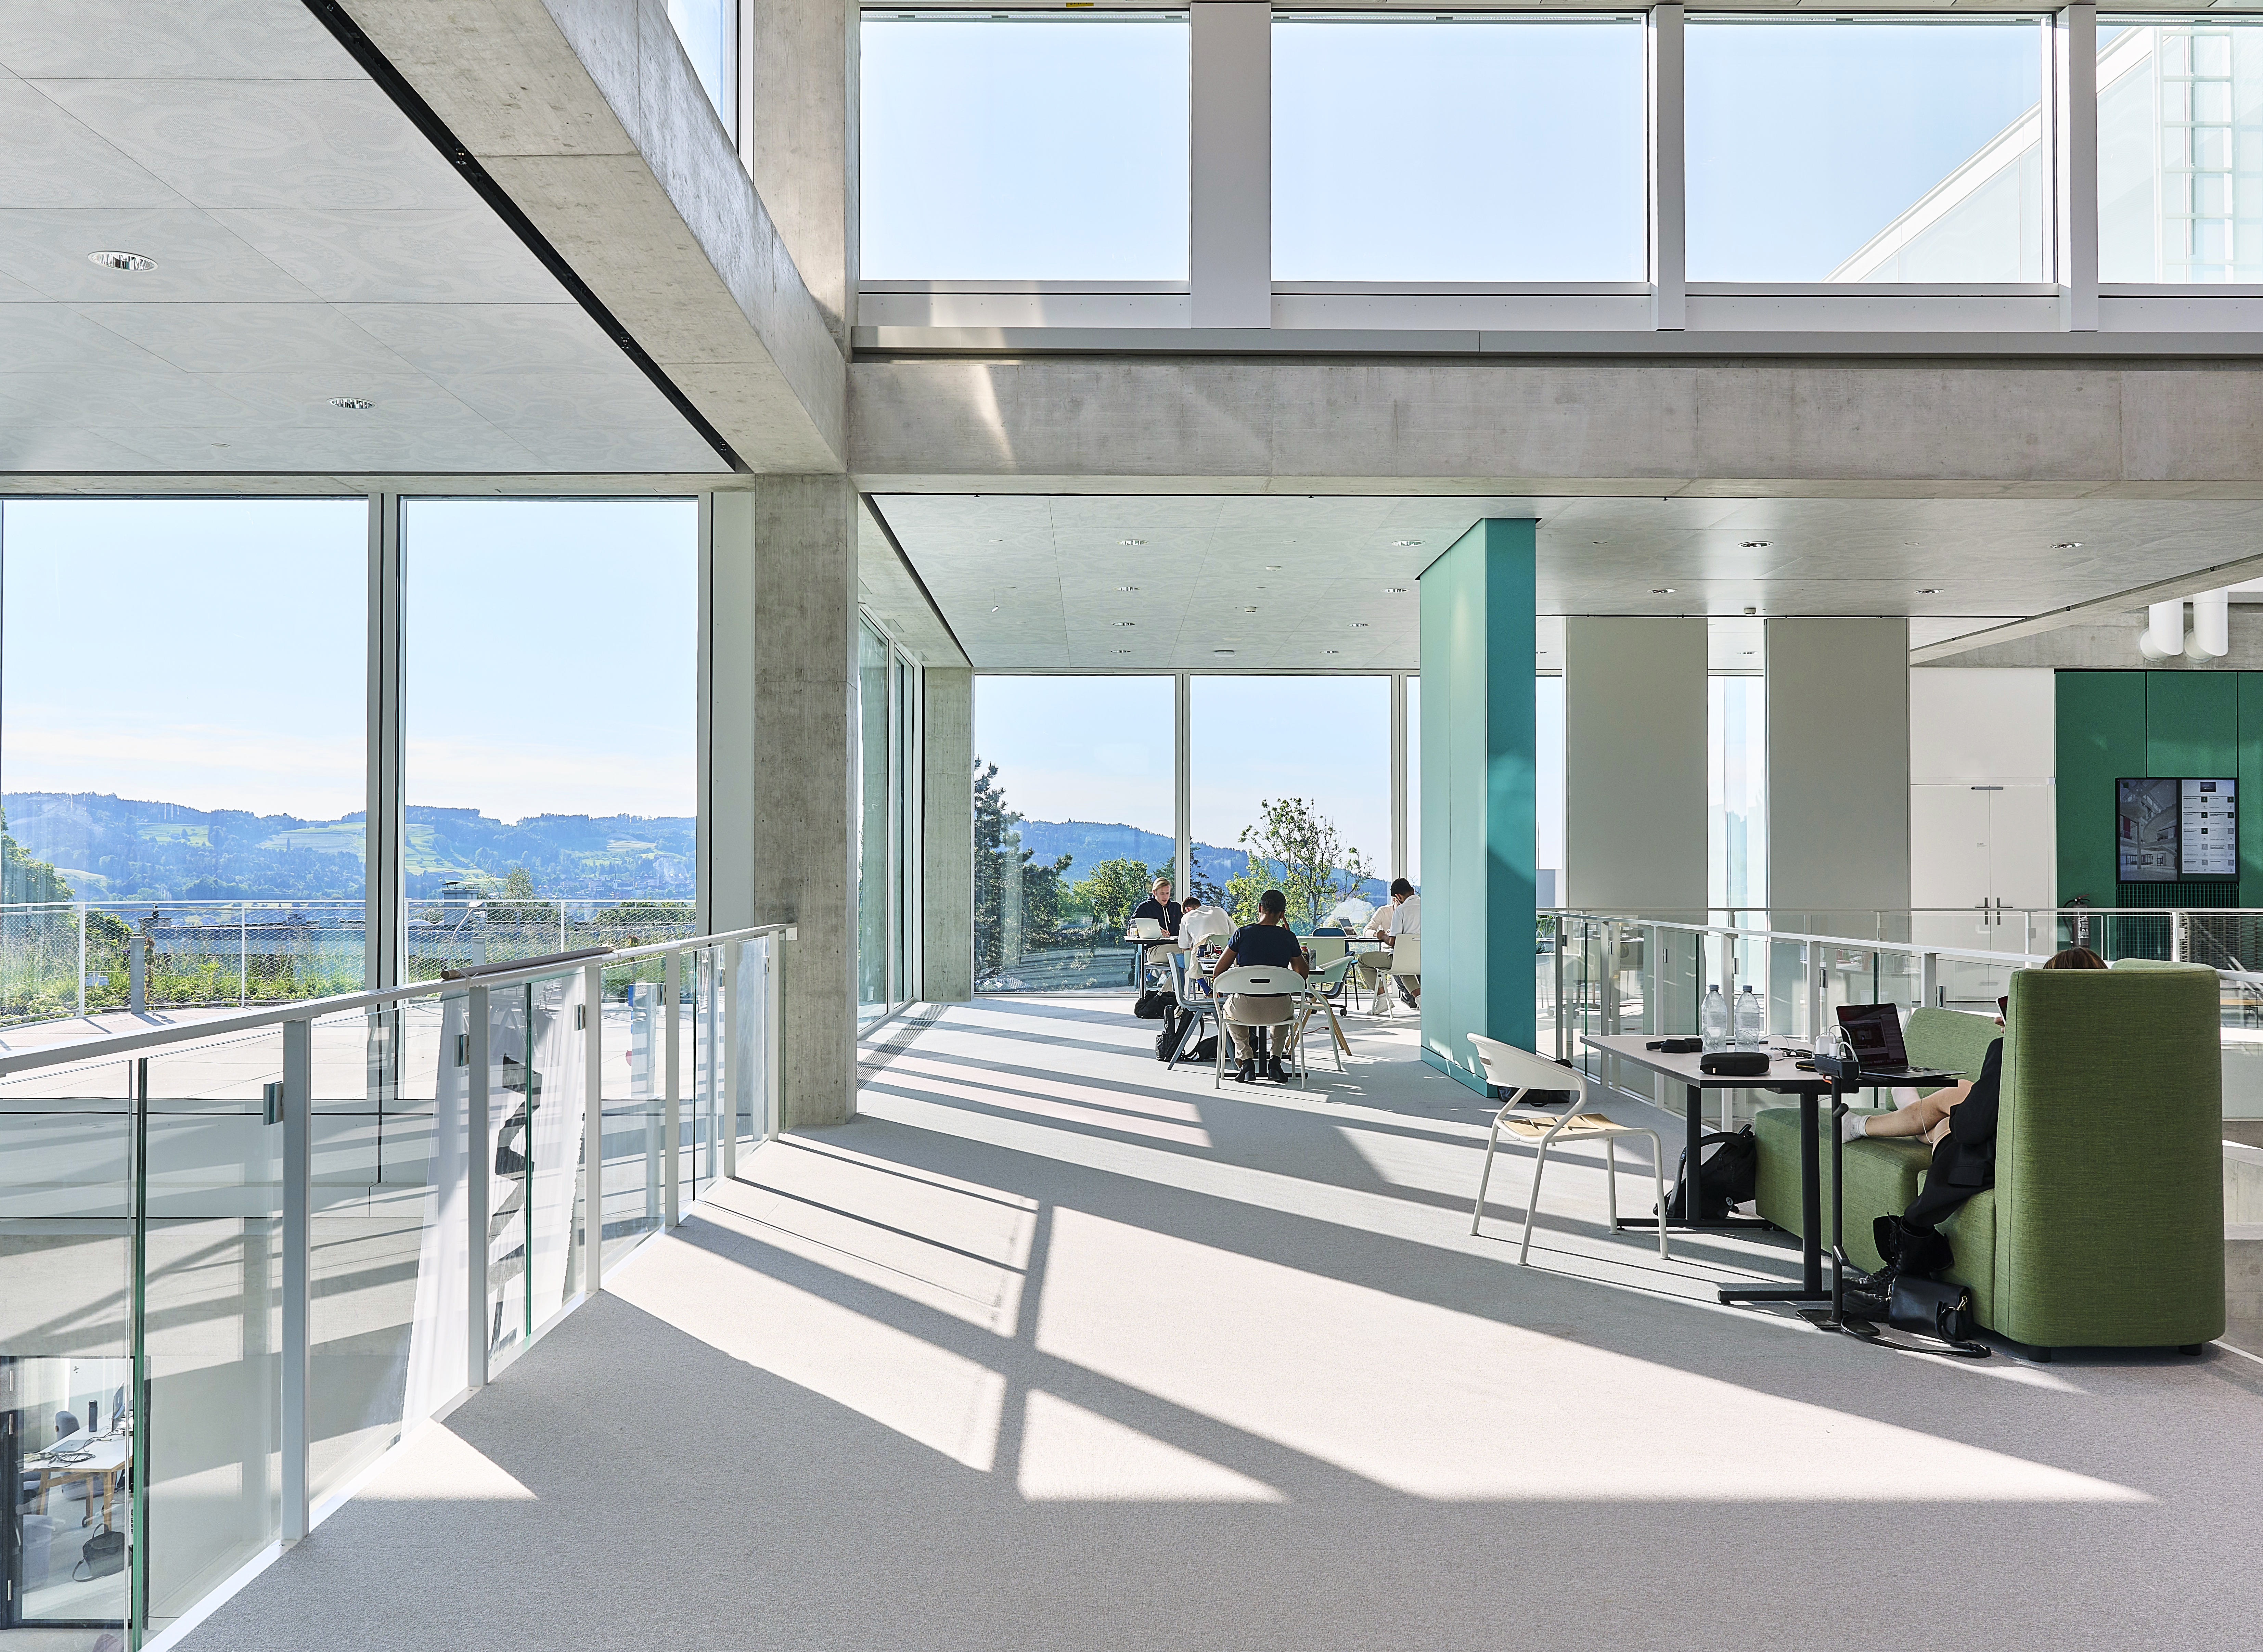 Die raumhohe Glasfassade versorgt die Lernenden im Inneren mit viel natürlichem Licht und mindert durch wärmedämmende Eigenschaften das Aufheizen der Räume.